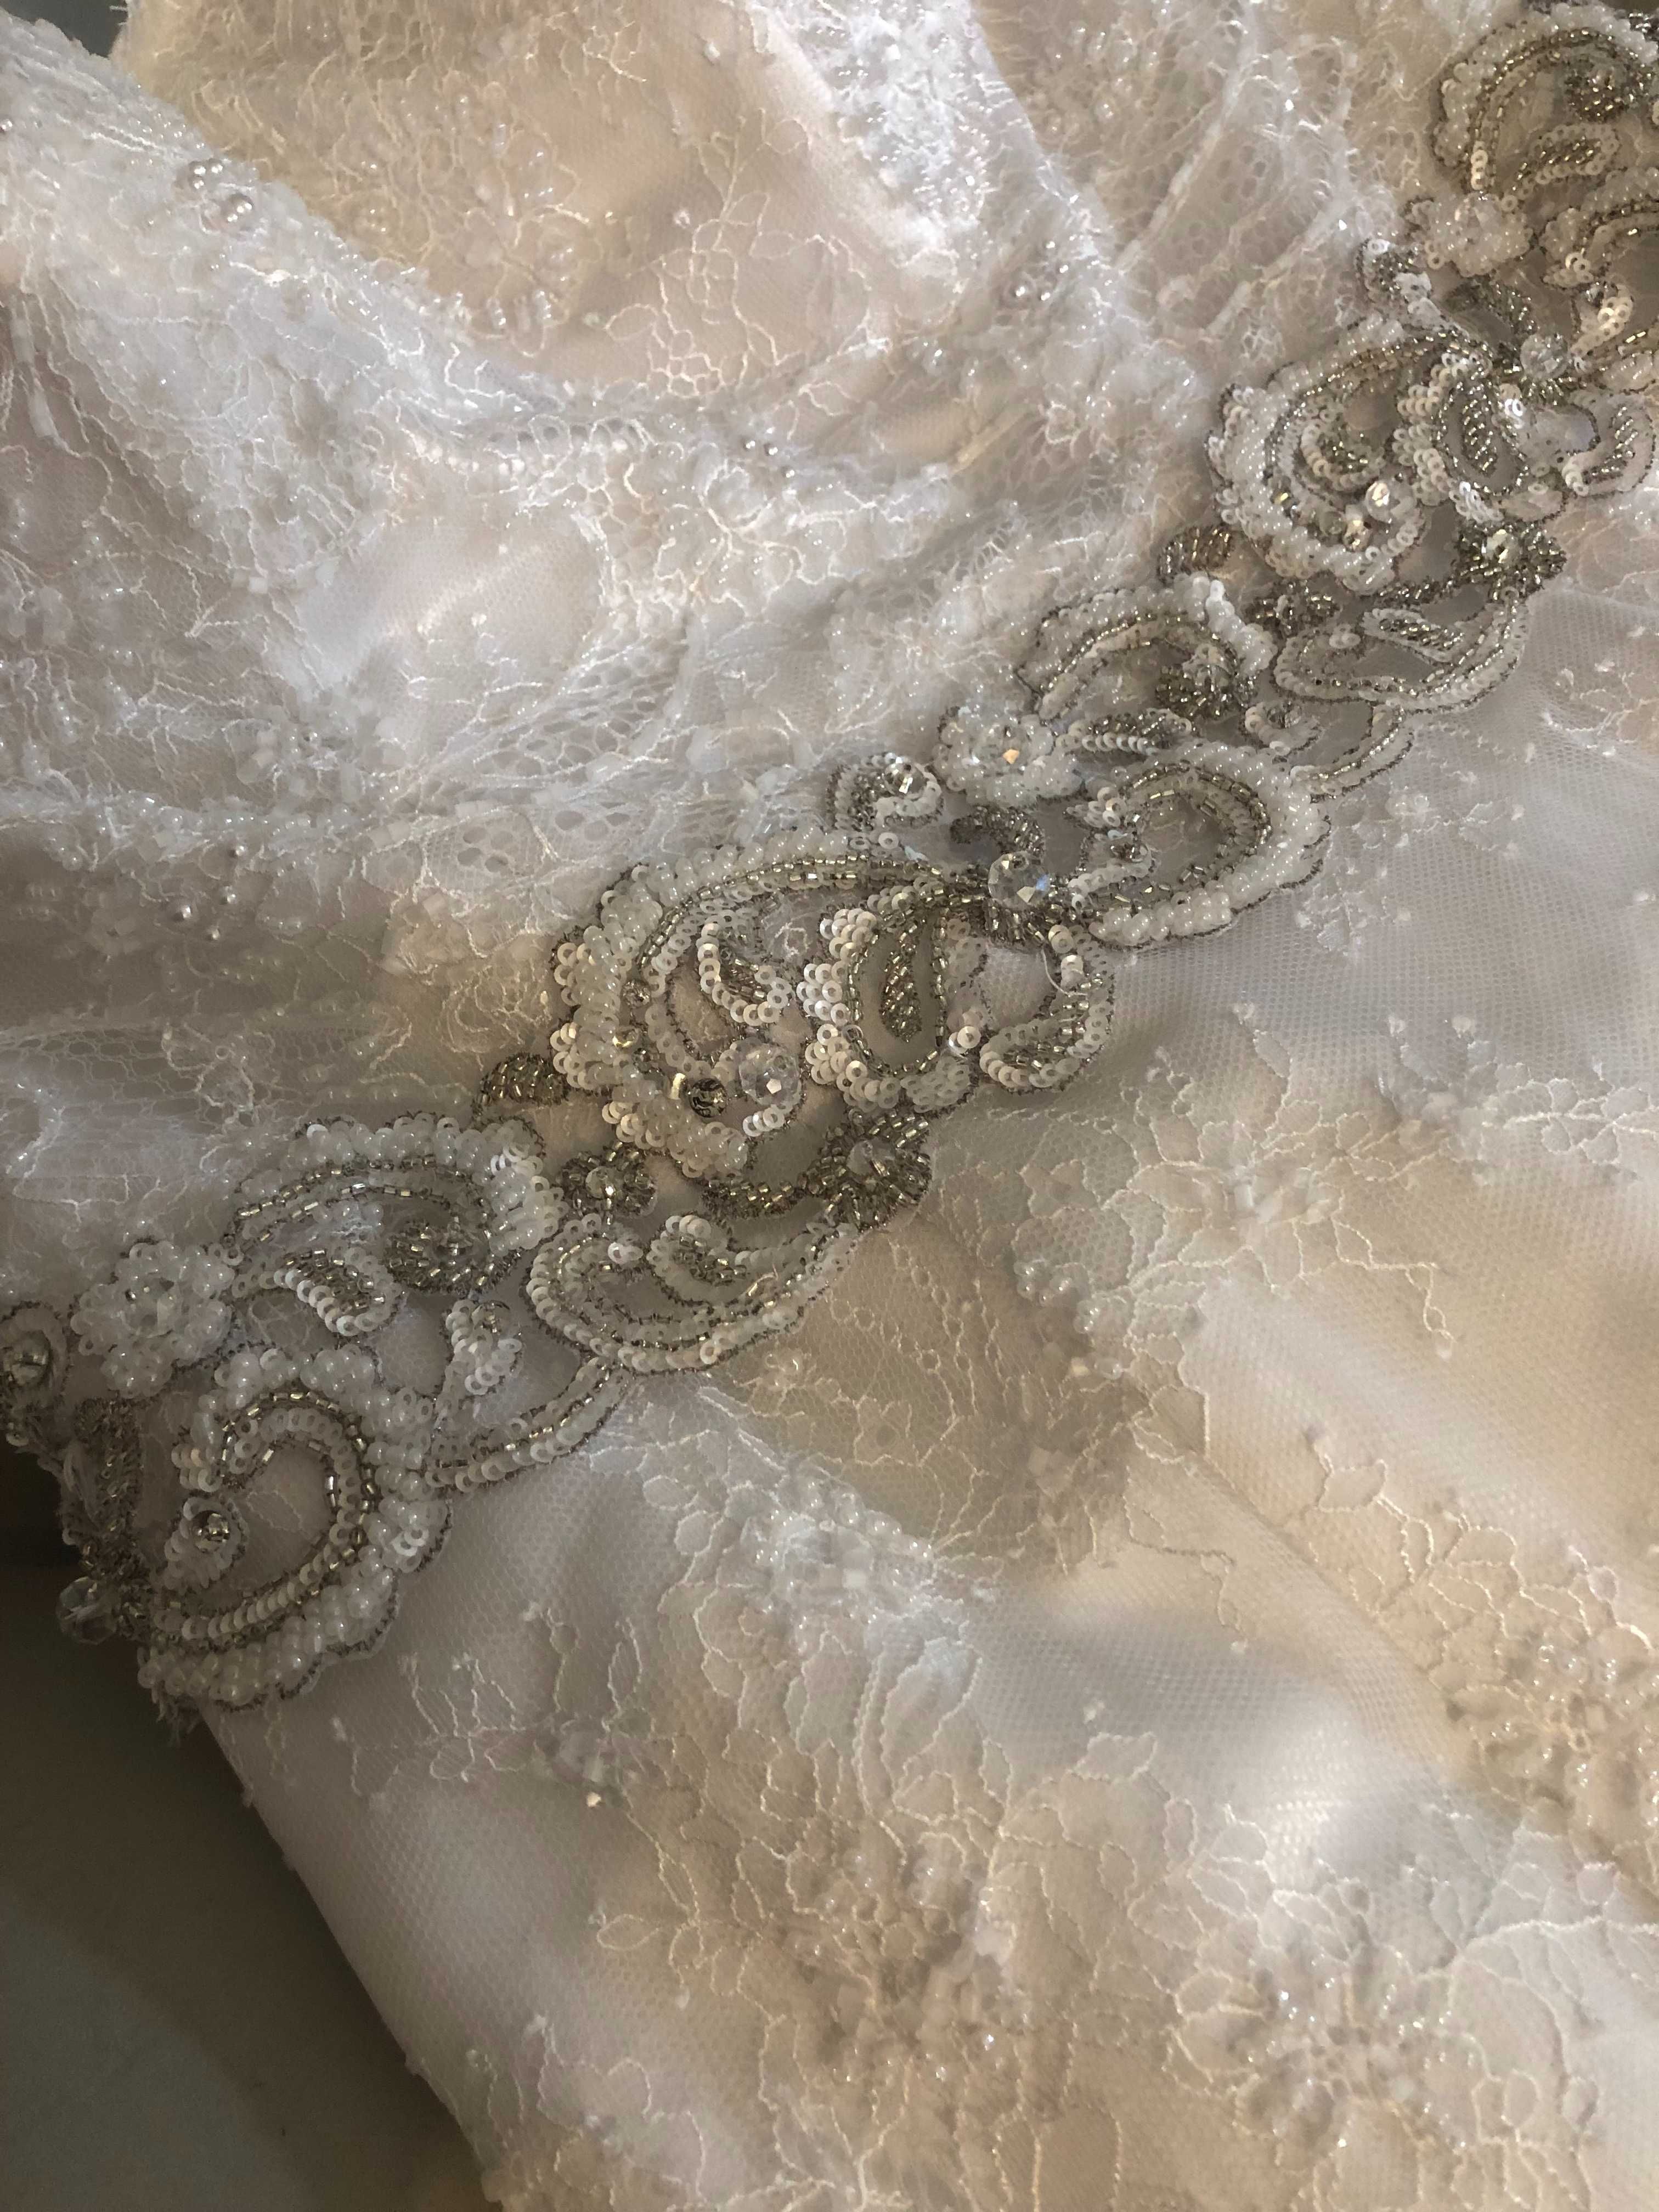 Piękna suknia ślubna z podpinanym trenem w kształcie syrenki :)